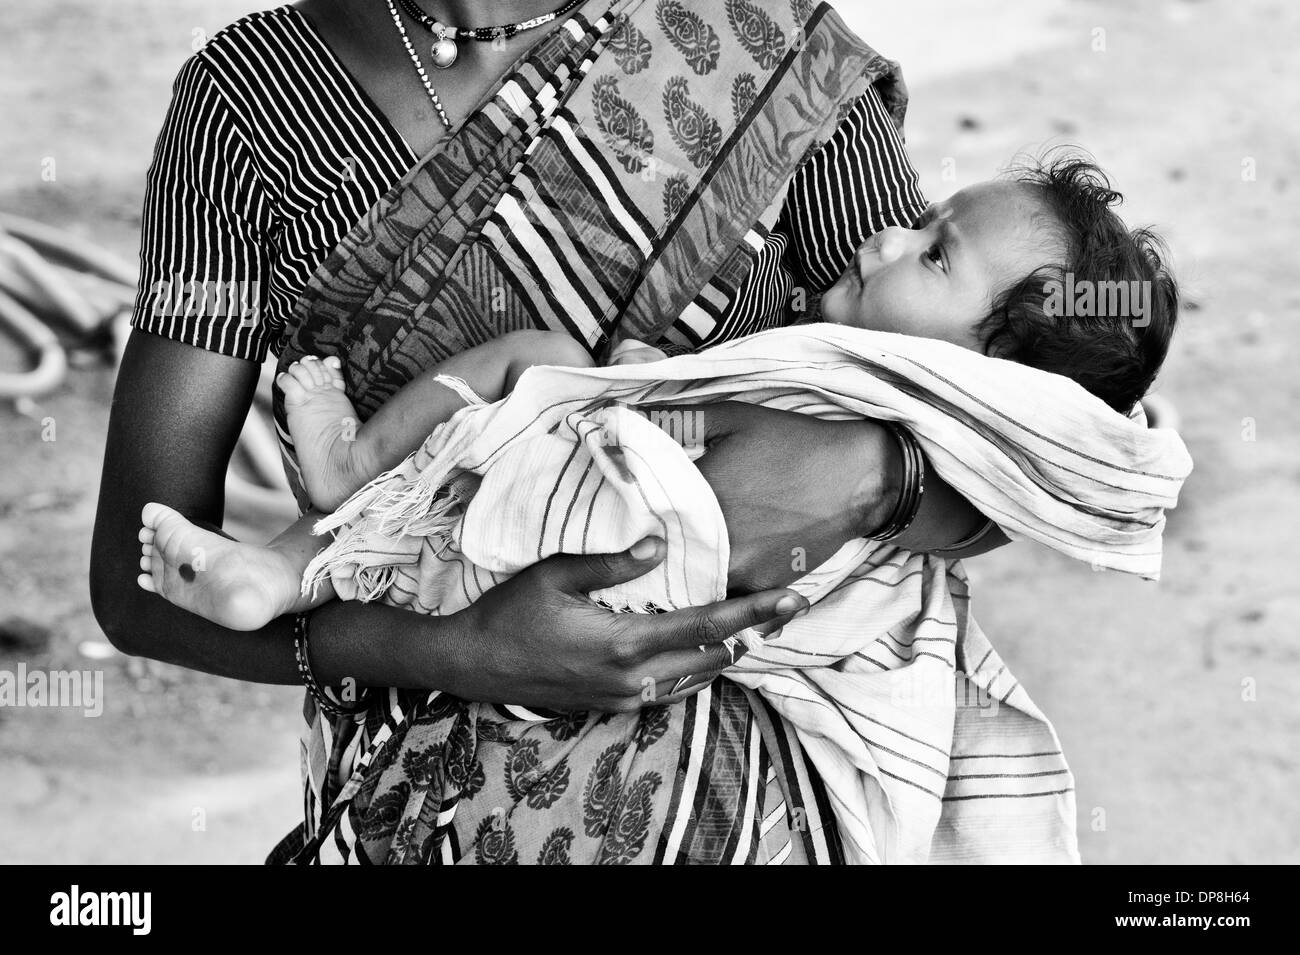 Basse caste indienne, berçant son bébé. L'Andhra Pradesh, en Inde . Monochrome Banque D'Images